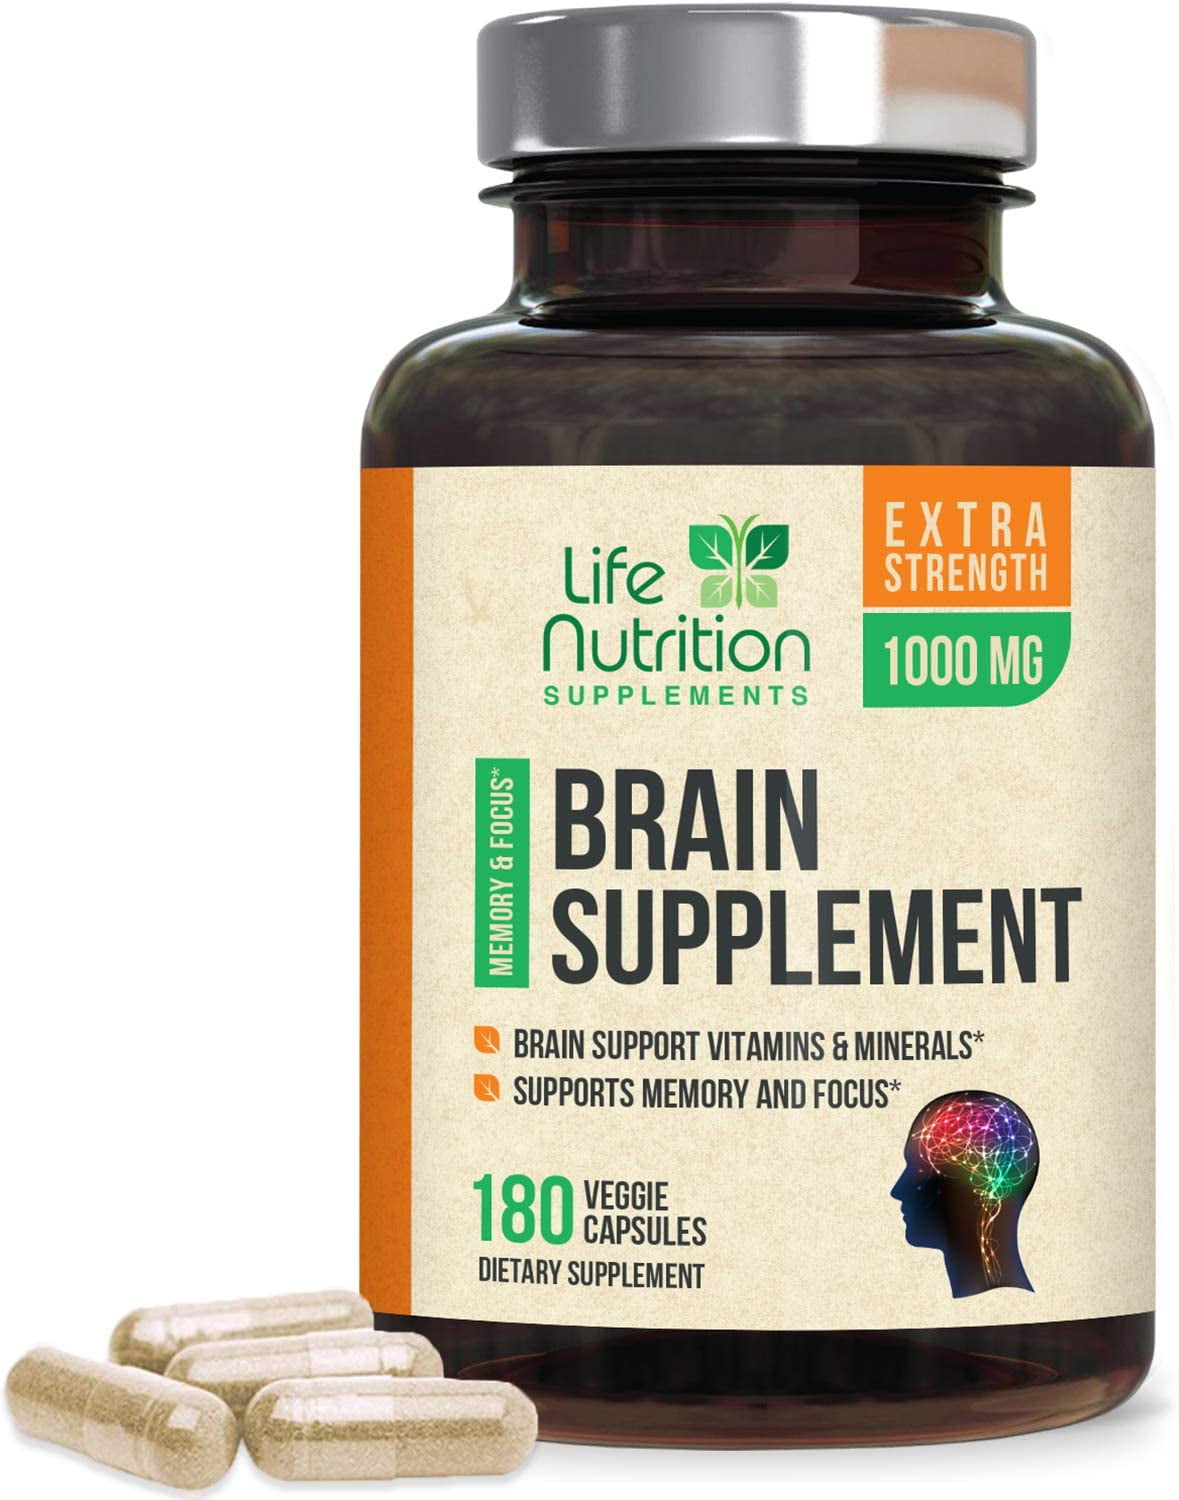 Top 5 Brain Supplements